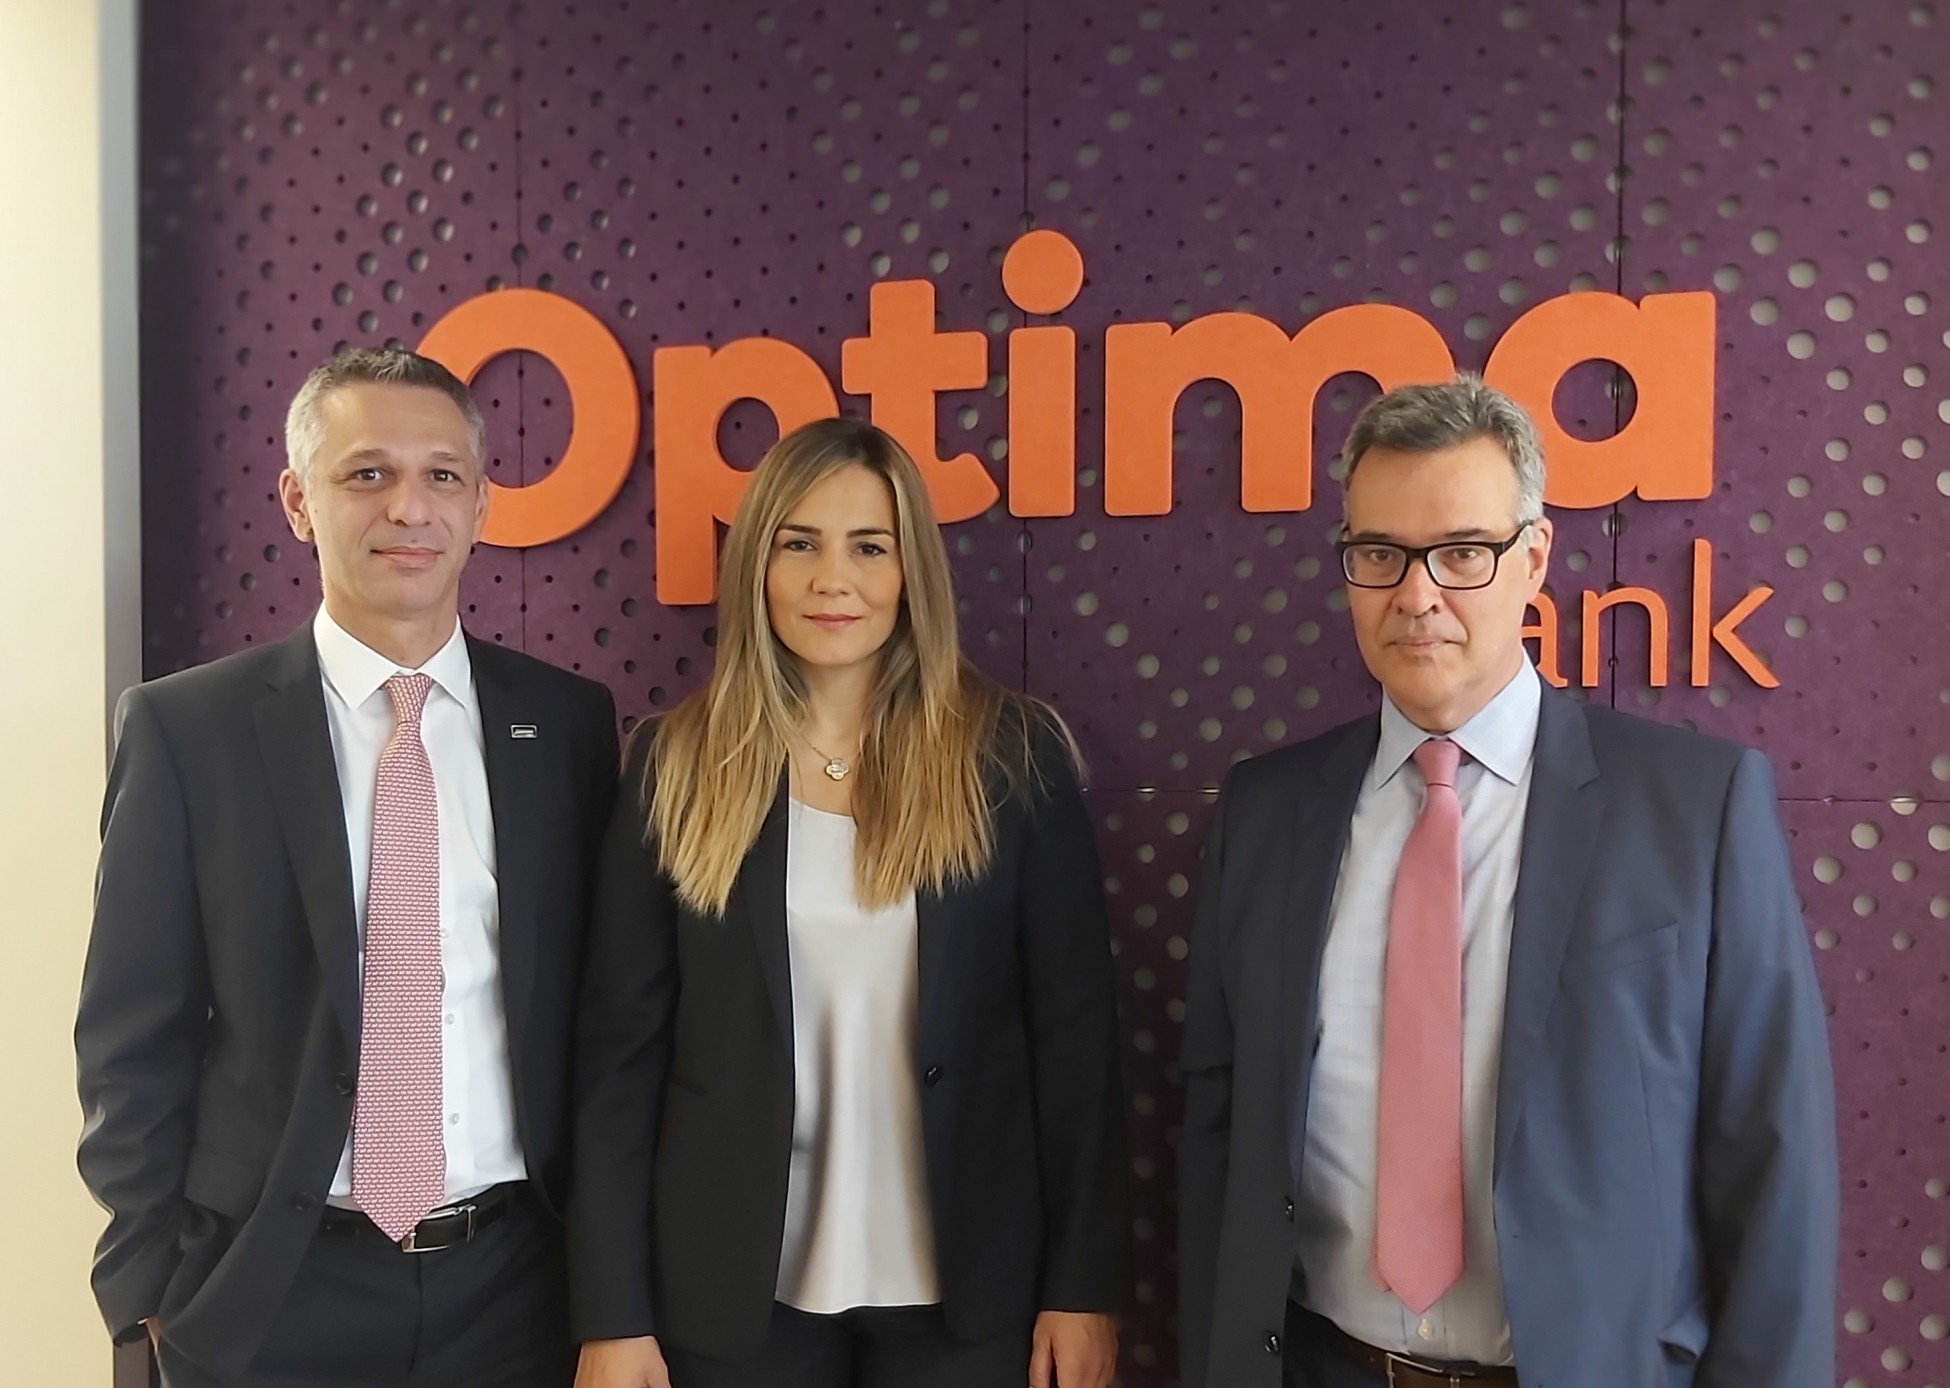 Η Optima bank συνεχίζει να καινοτομεί σε συνεργασία με την Accenture και τη Microsoft